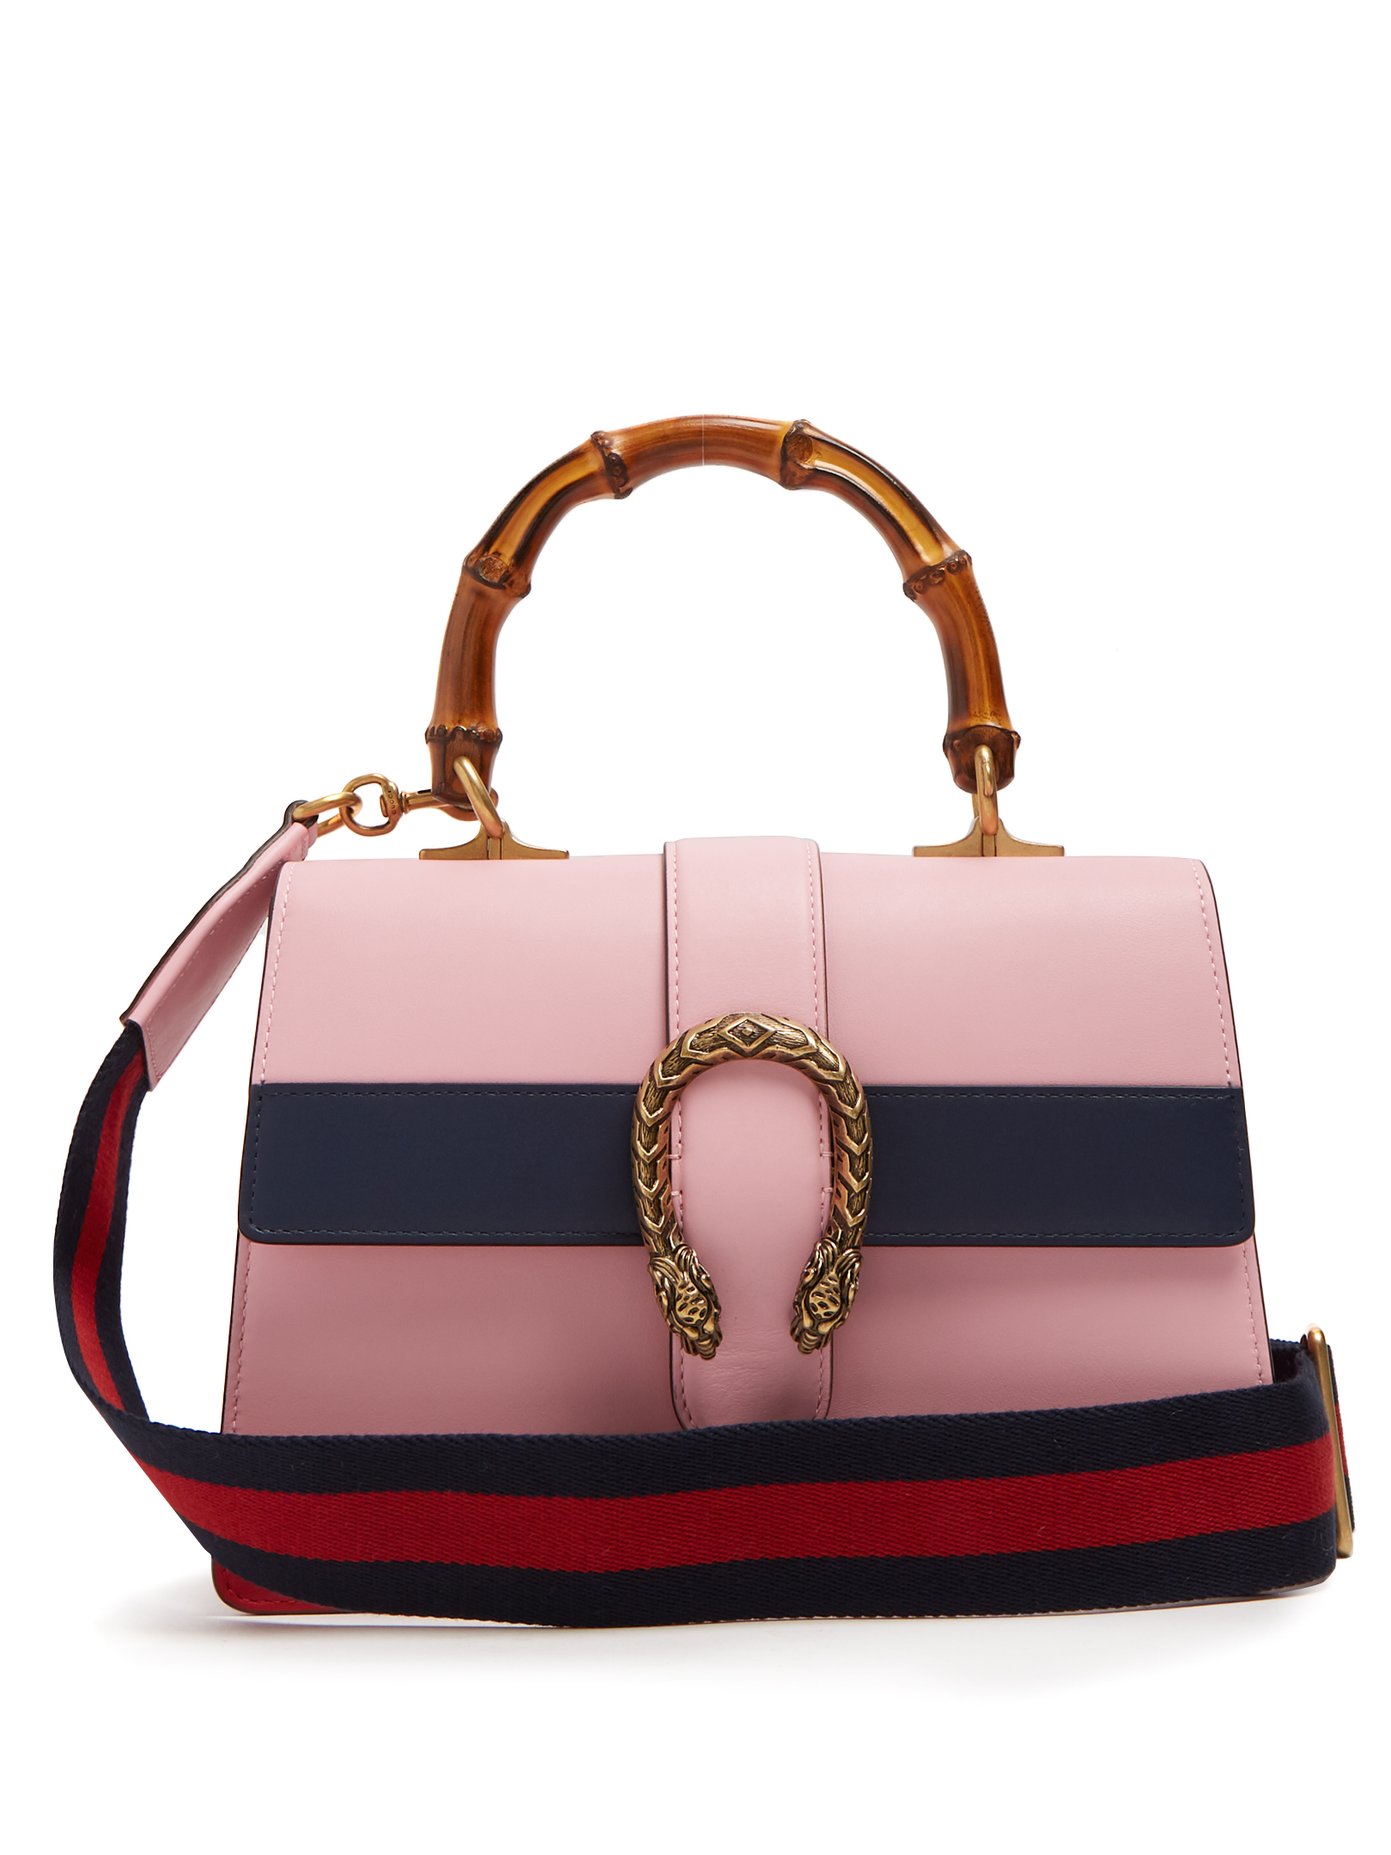 gucci pink bamboo handbag